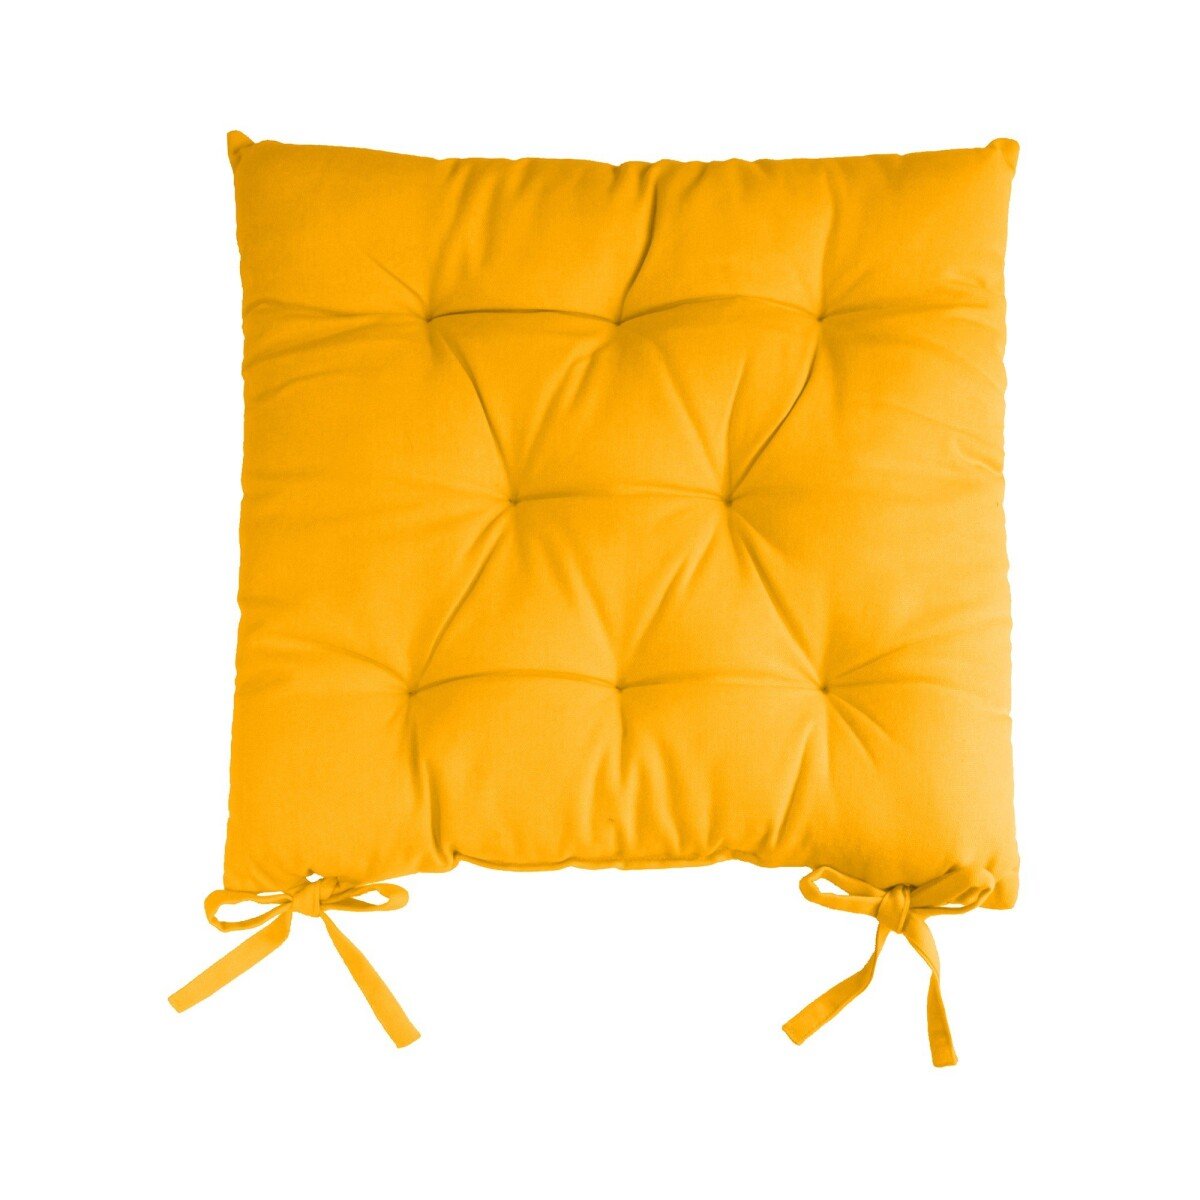 Súprava 2 jednofarebných sedákov na stoličku zn. Colombine žltá 40x40x7cm